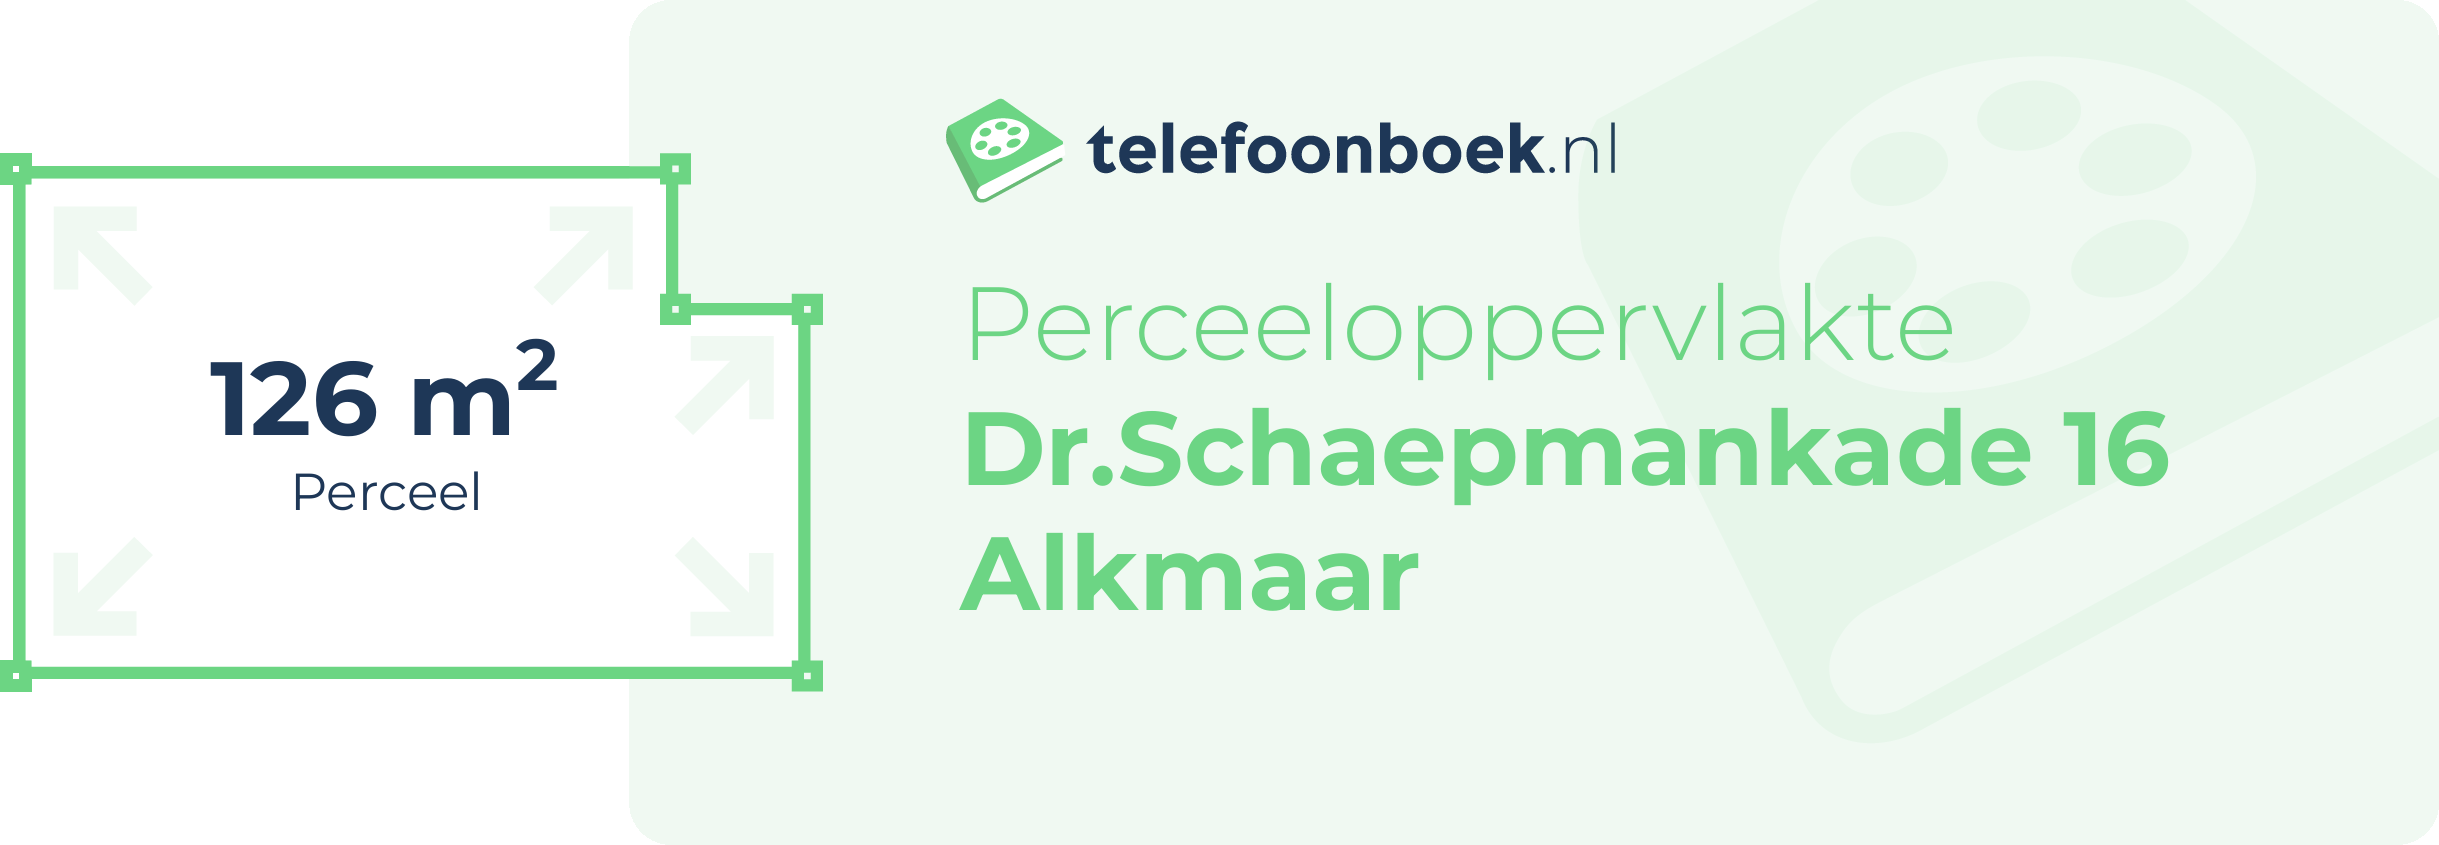 Perceeloppervlakte Dr.Schaepmankade 16 Alkmaar